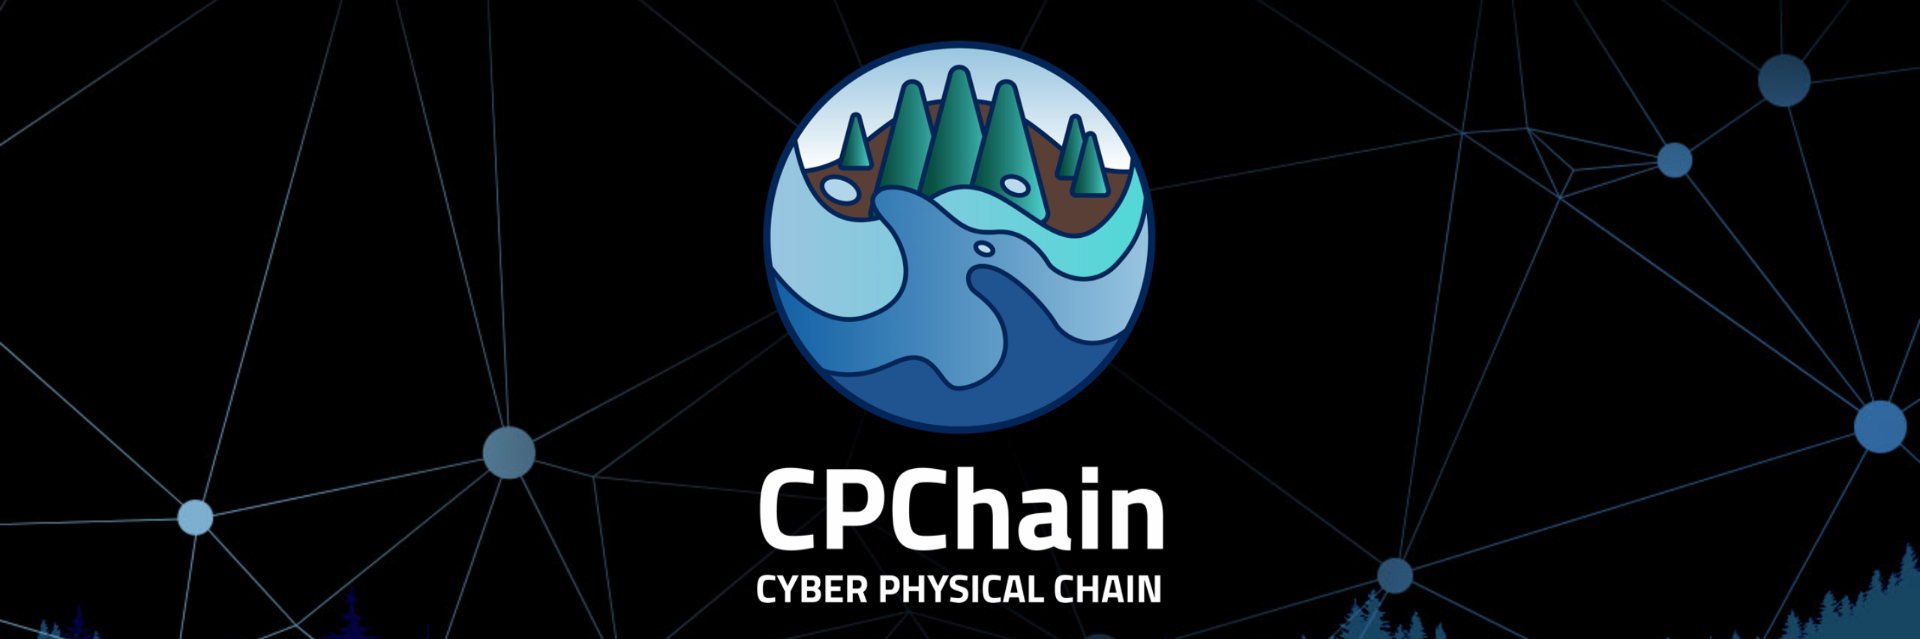 CPChain (ký hiệu CPC là viết tắt của Cyber-Physical Chain)